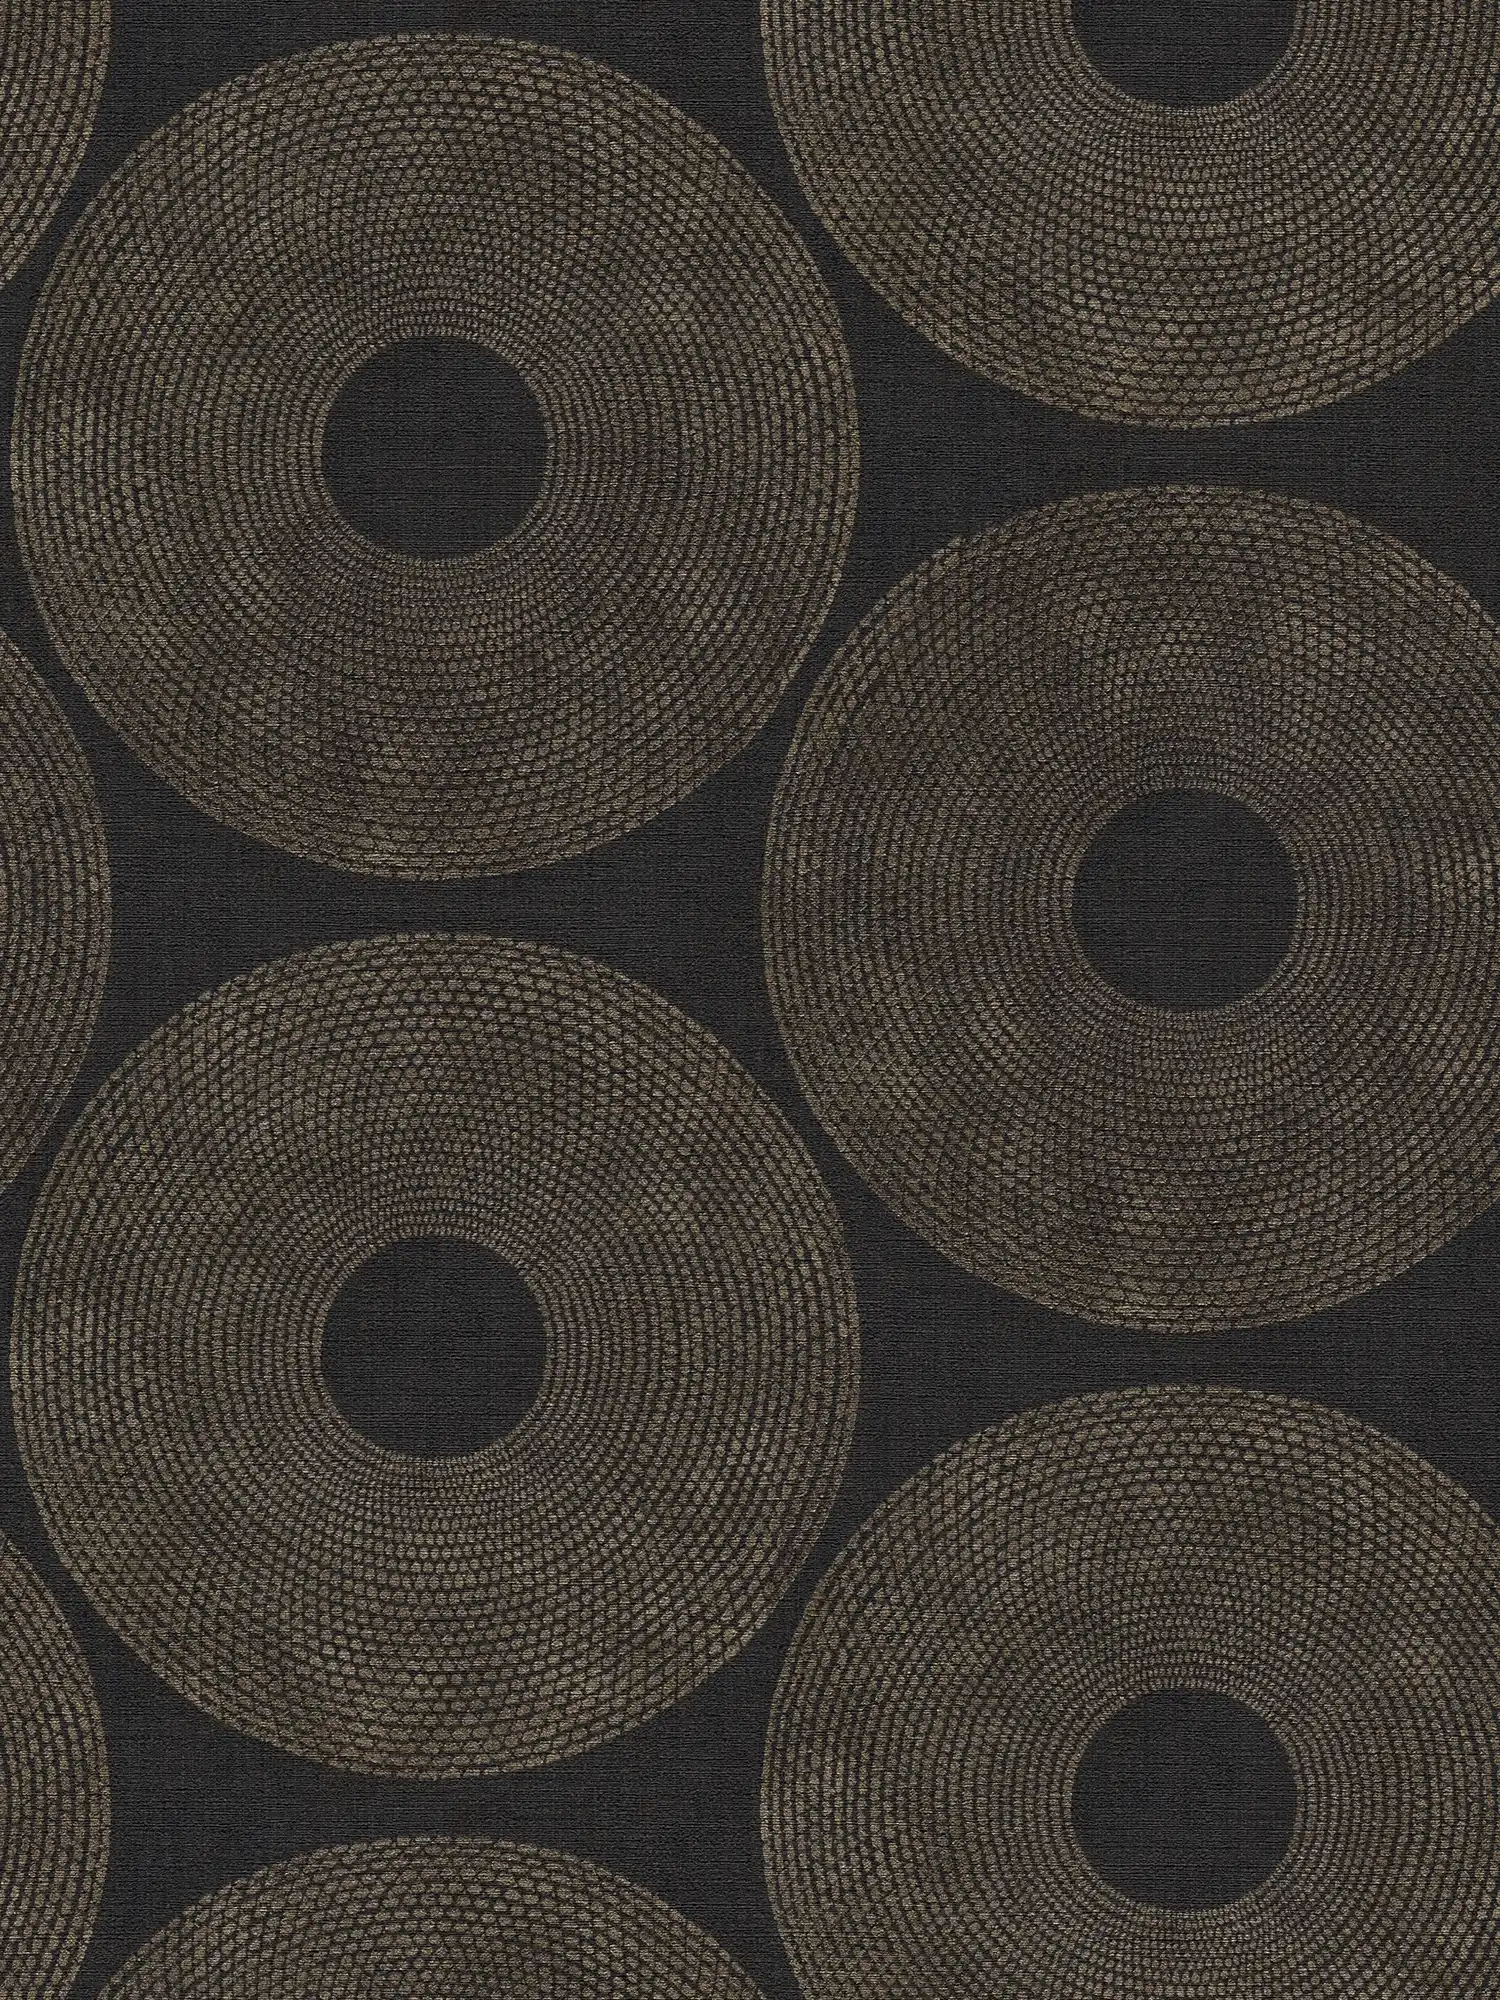         Ethno Tapete Kreise mit Strukturdesign – Grau, Braun
    